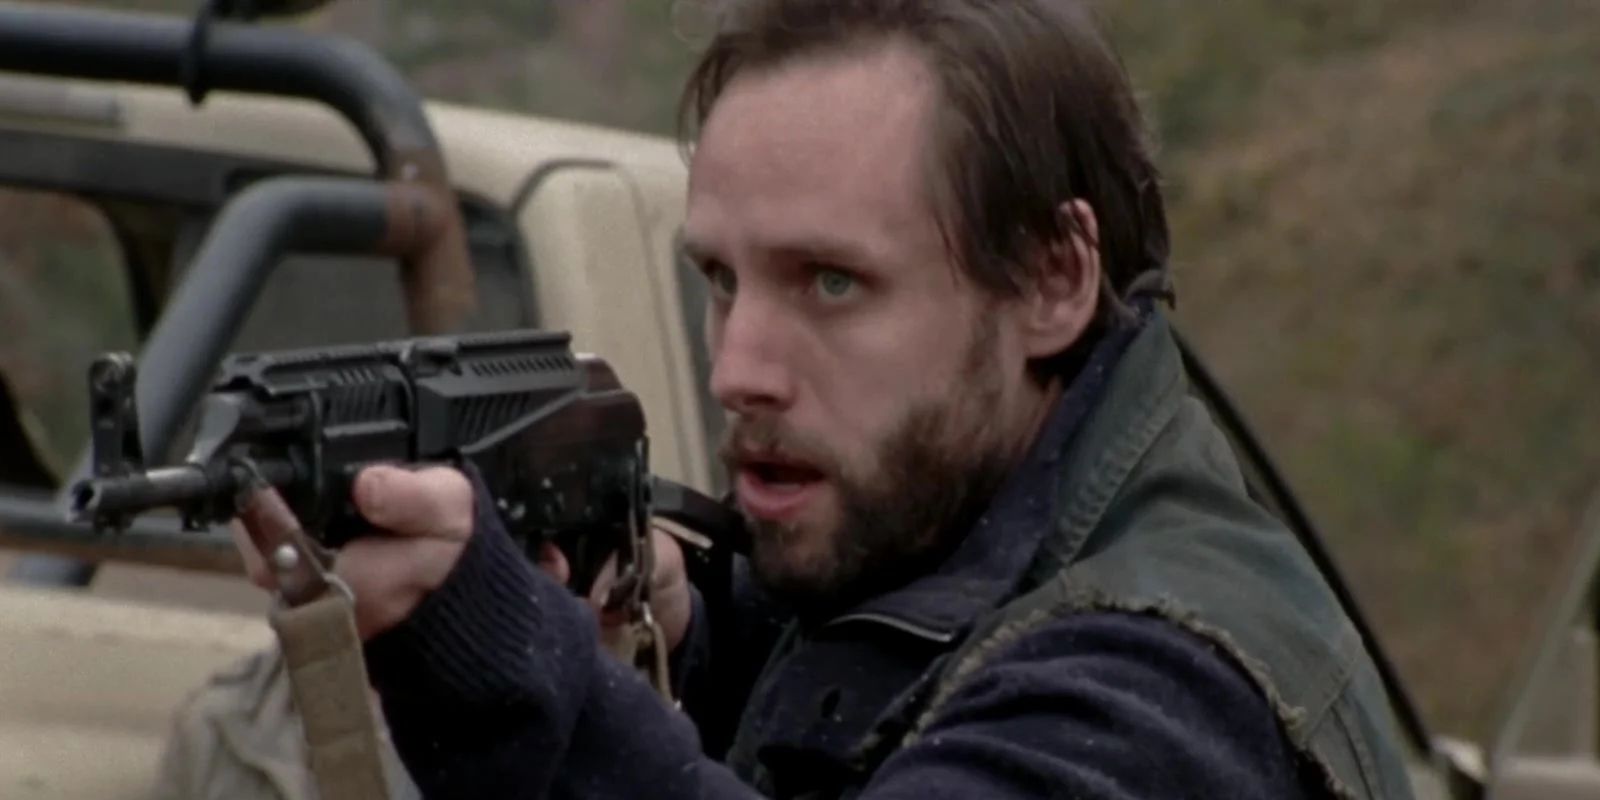 Allen points a gun in The Walking Dead